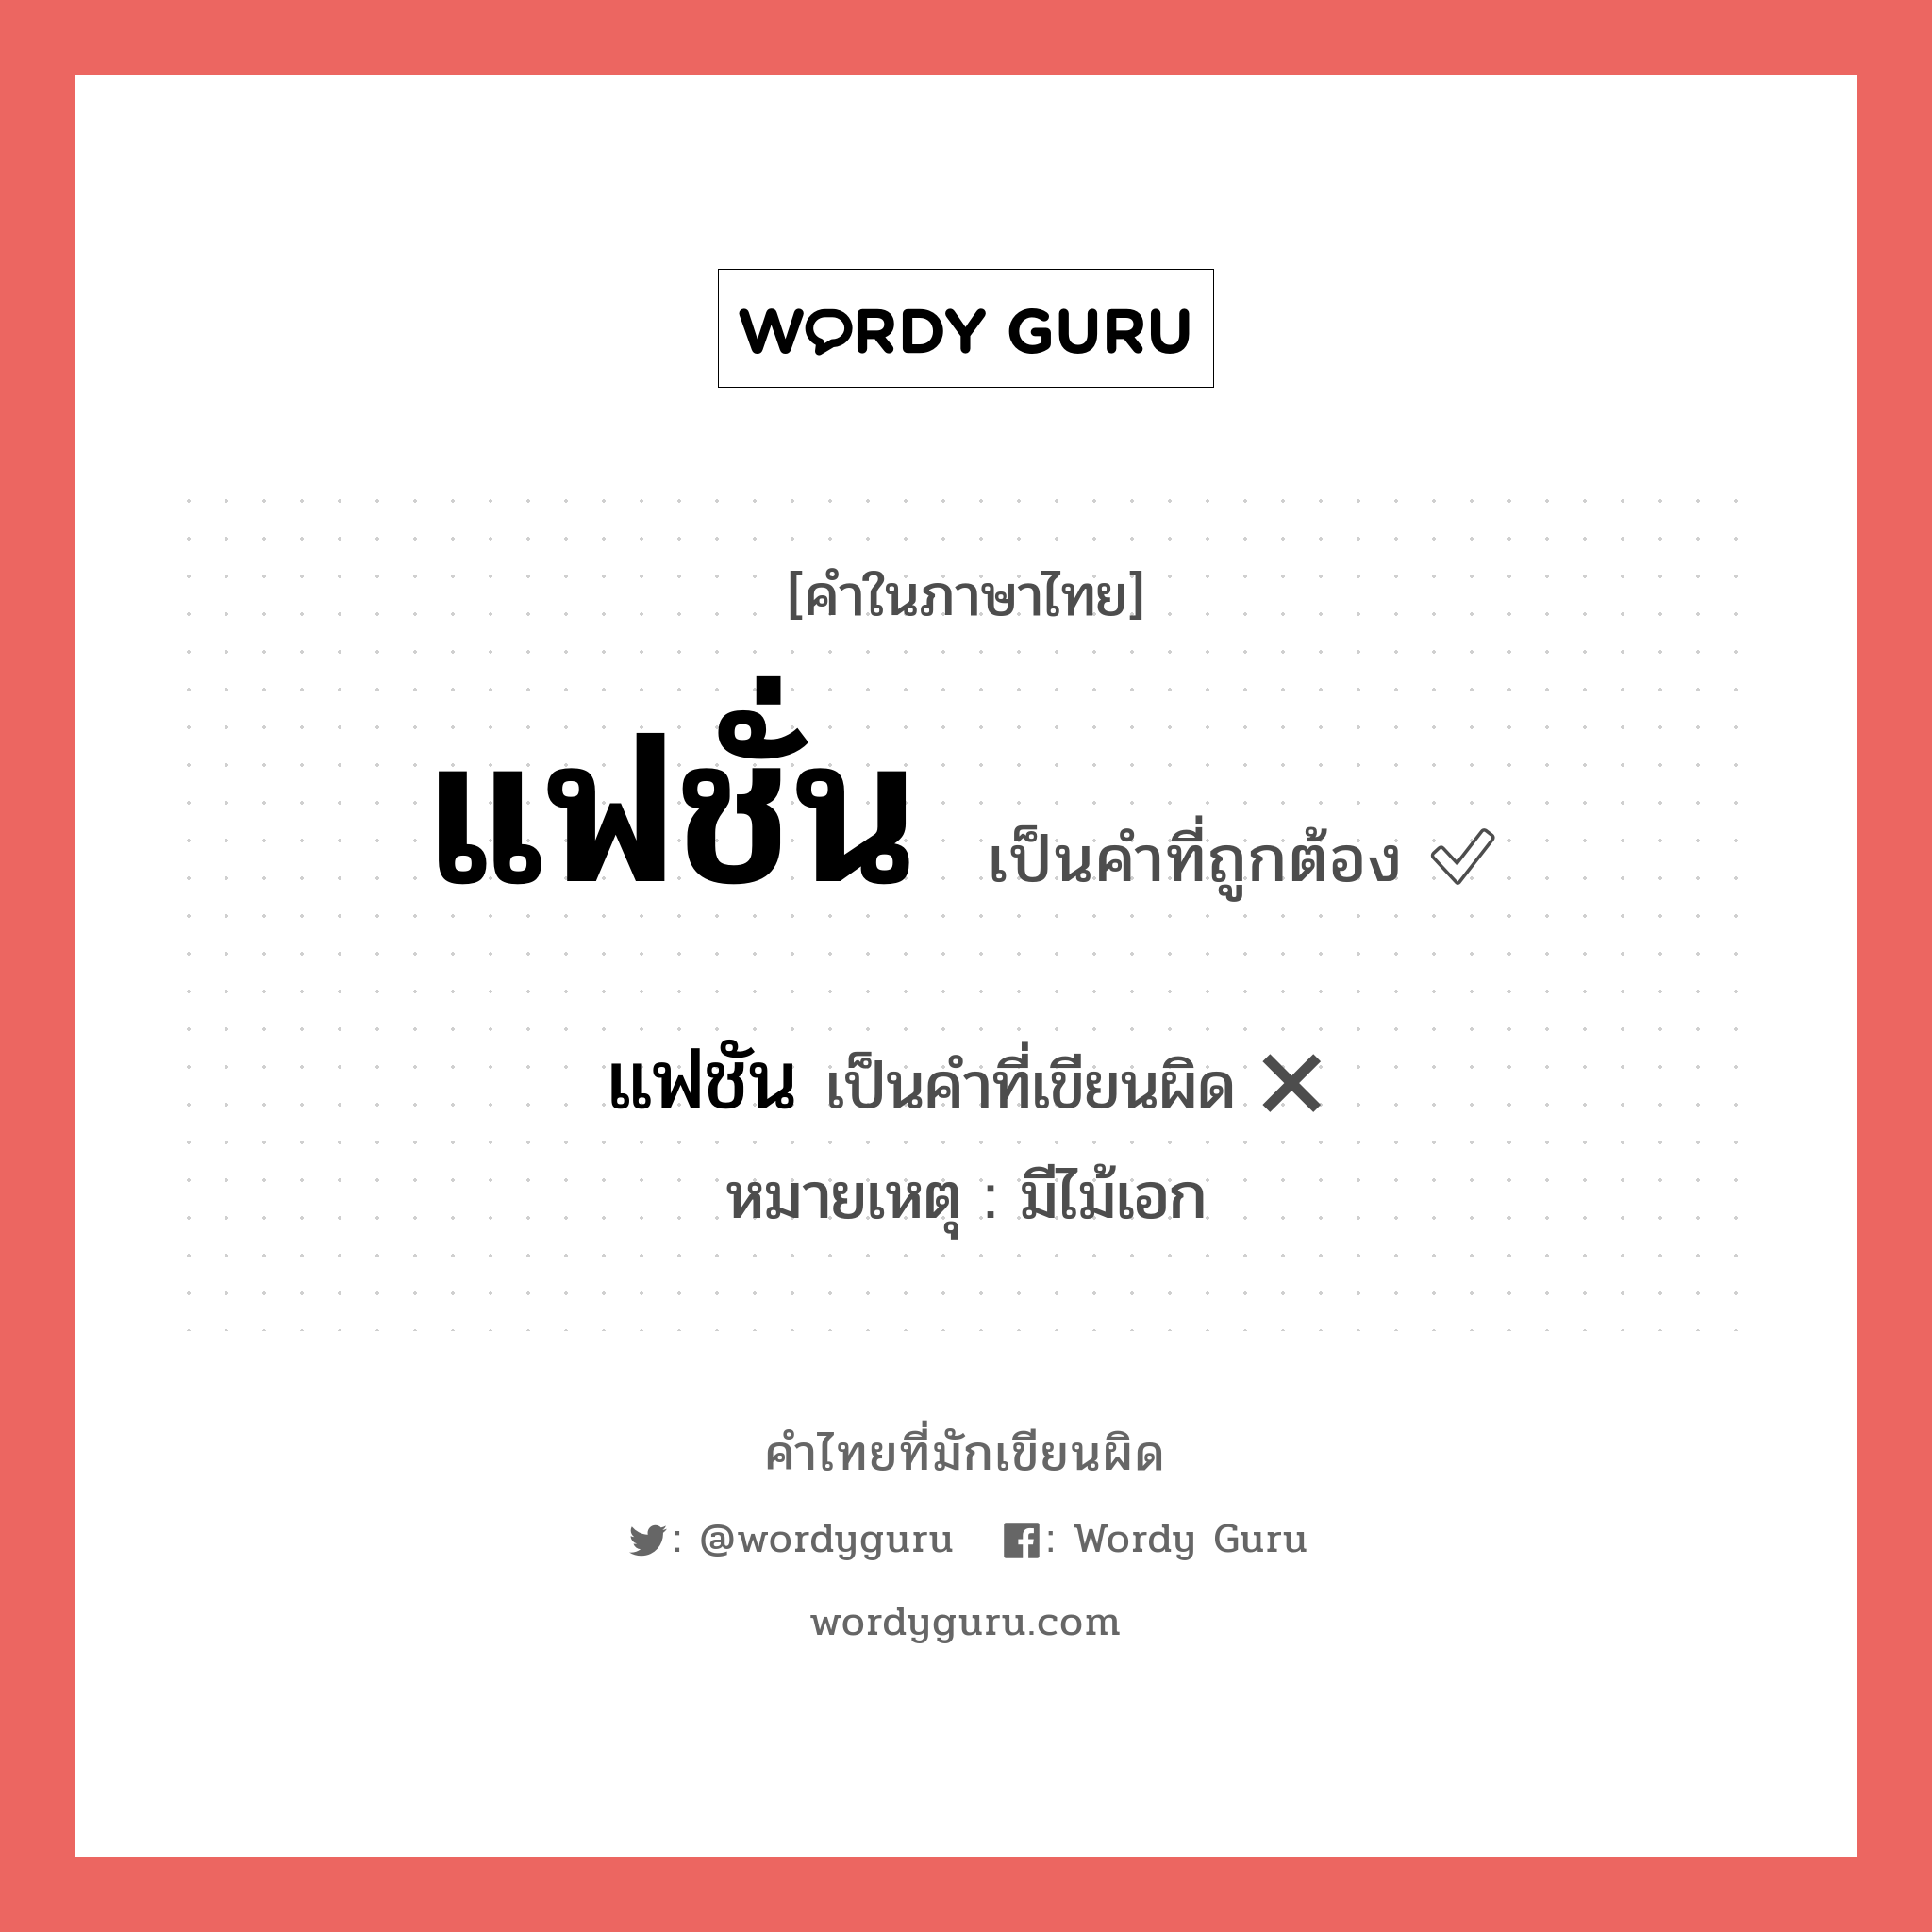 แฟชั่น หรือ แฟชัน คำไหนเขียนถูก?, คำในภาษาไทยที่มักเขียนผิด แฟชั่น คำที่ผิด ❌ แฟชัน หมายเหตุ มีไม้เอก